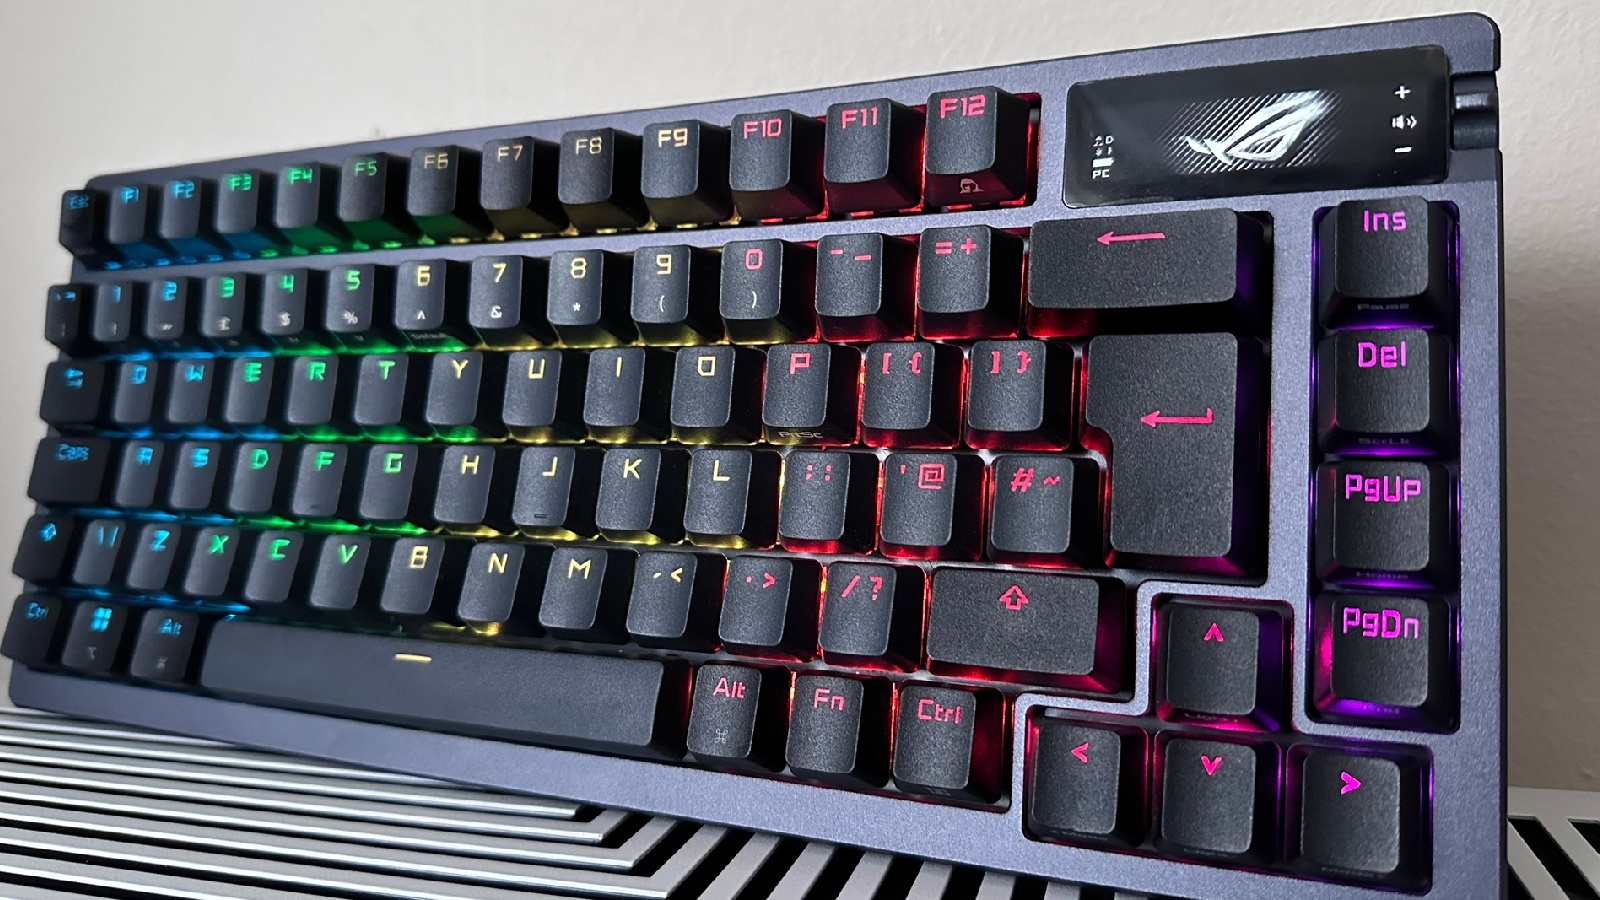 Asus ROG Azoth review: better than my custom gaming keyboard